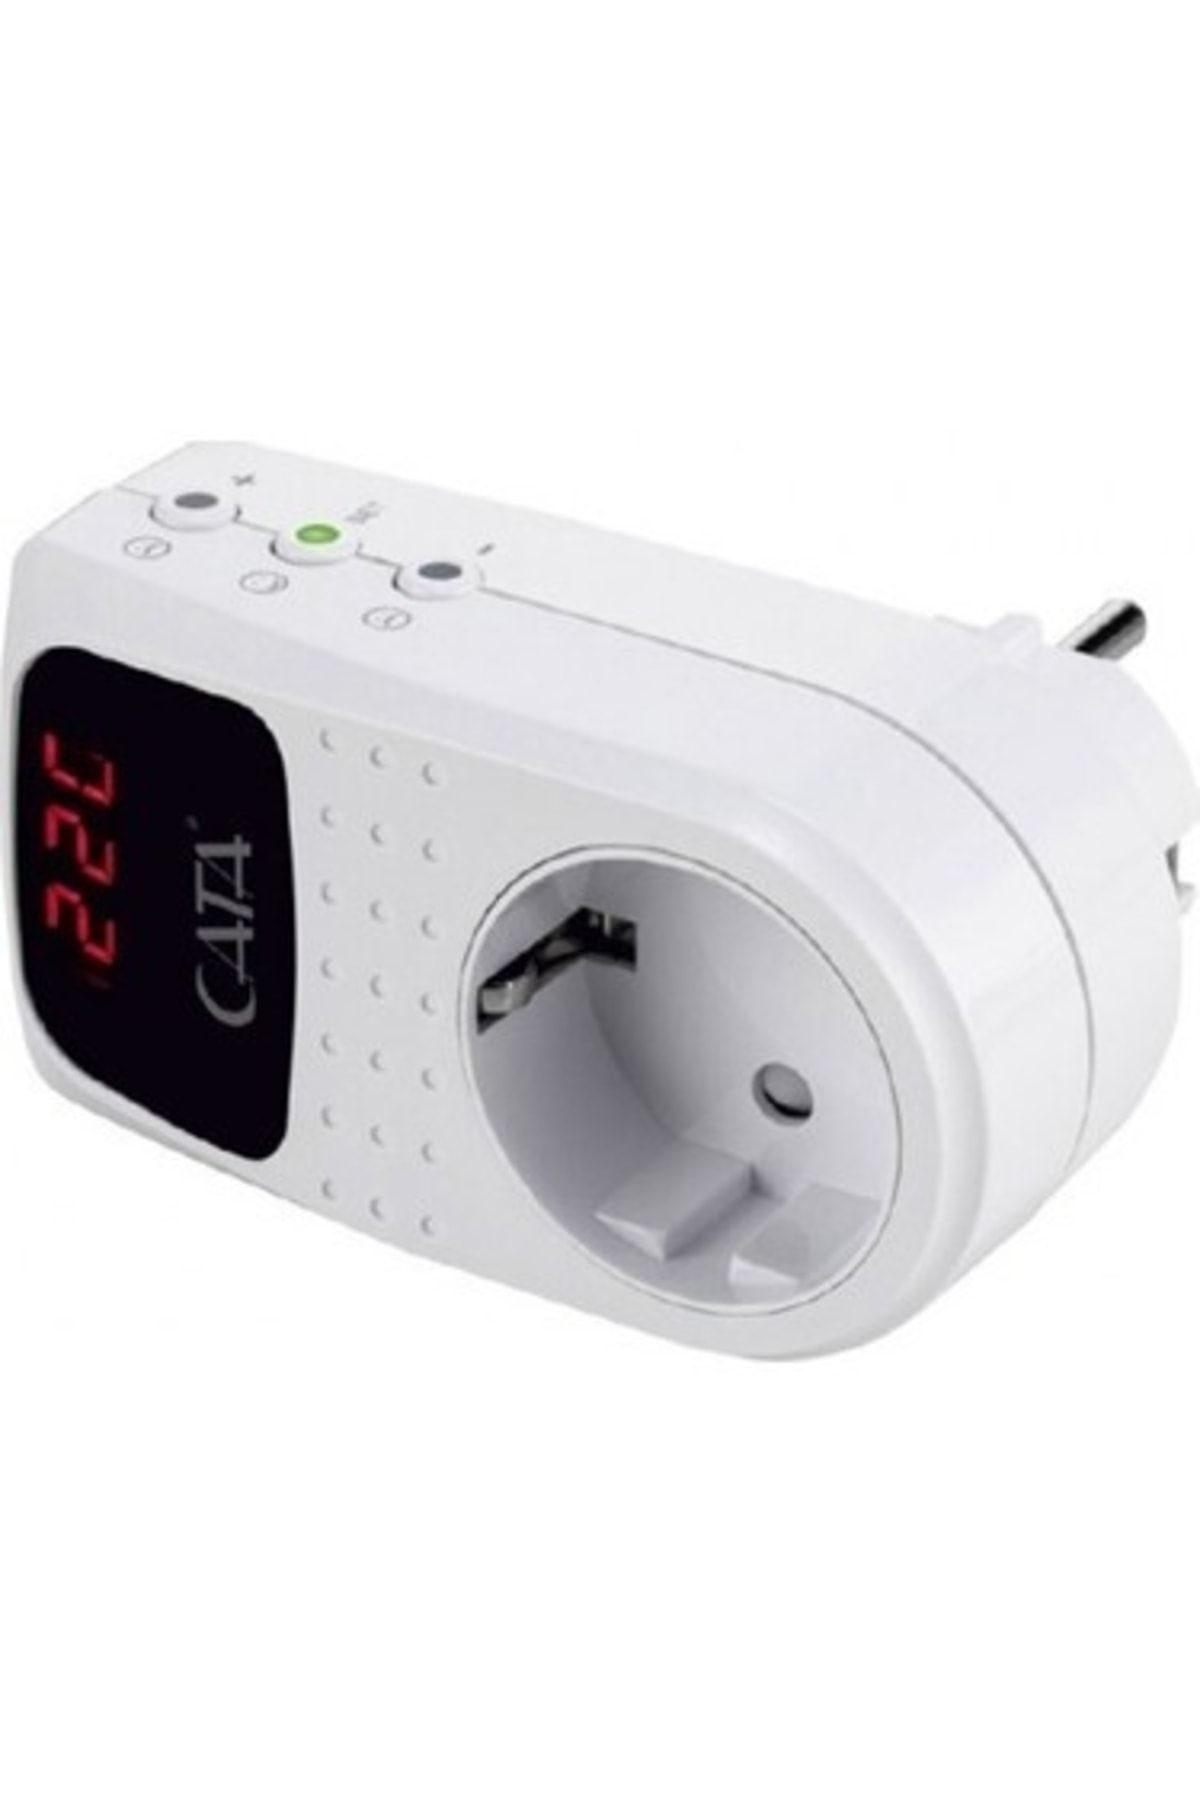 Cata 4000 Watt Dijital Priz Regülatör (ct-9187)